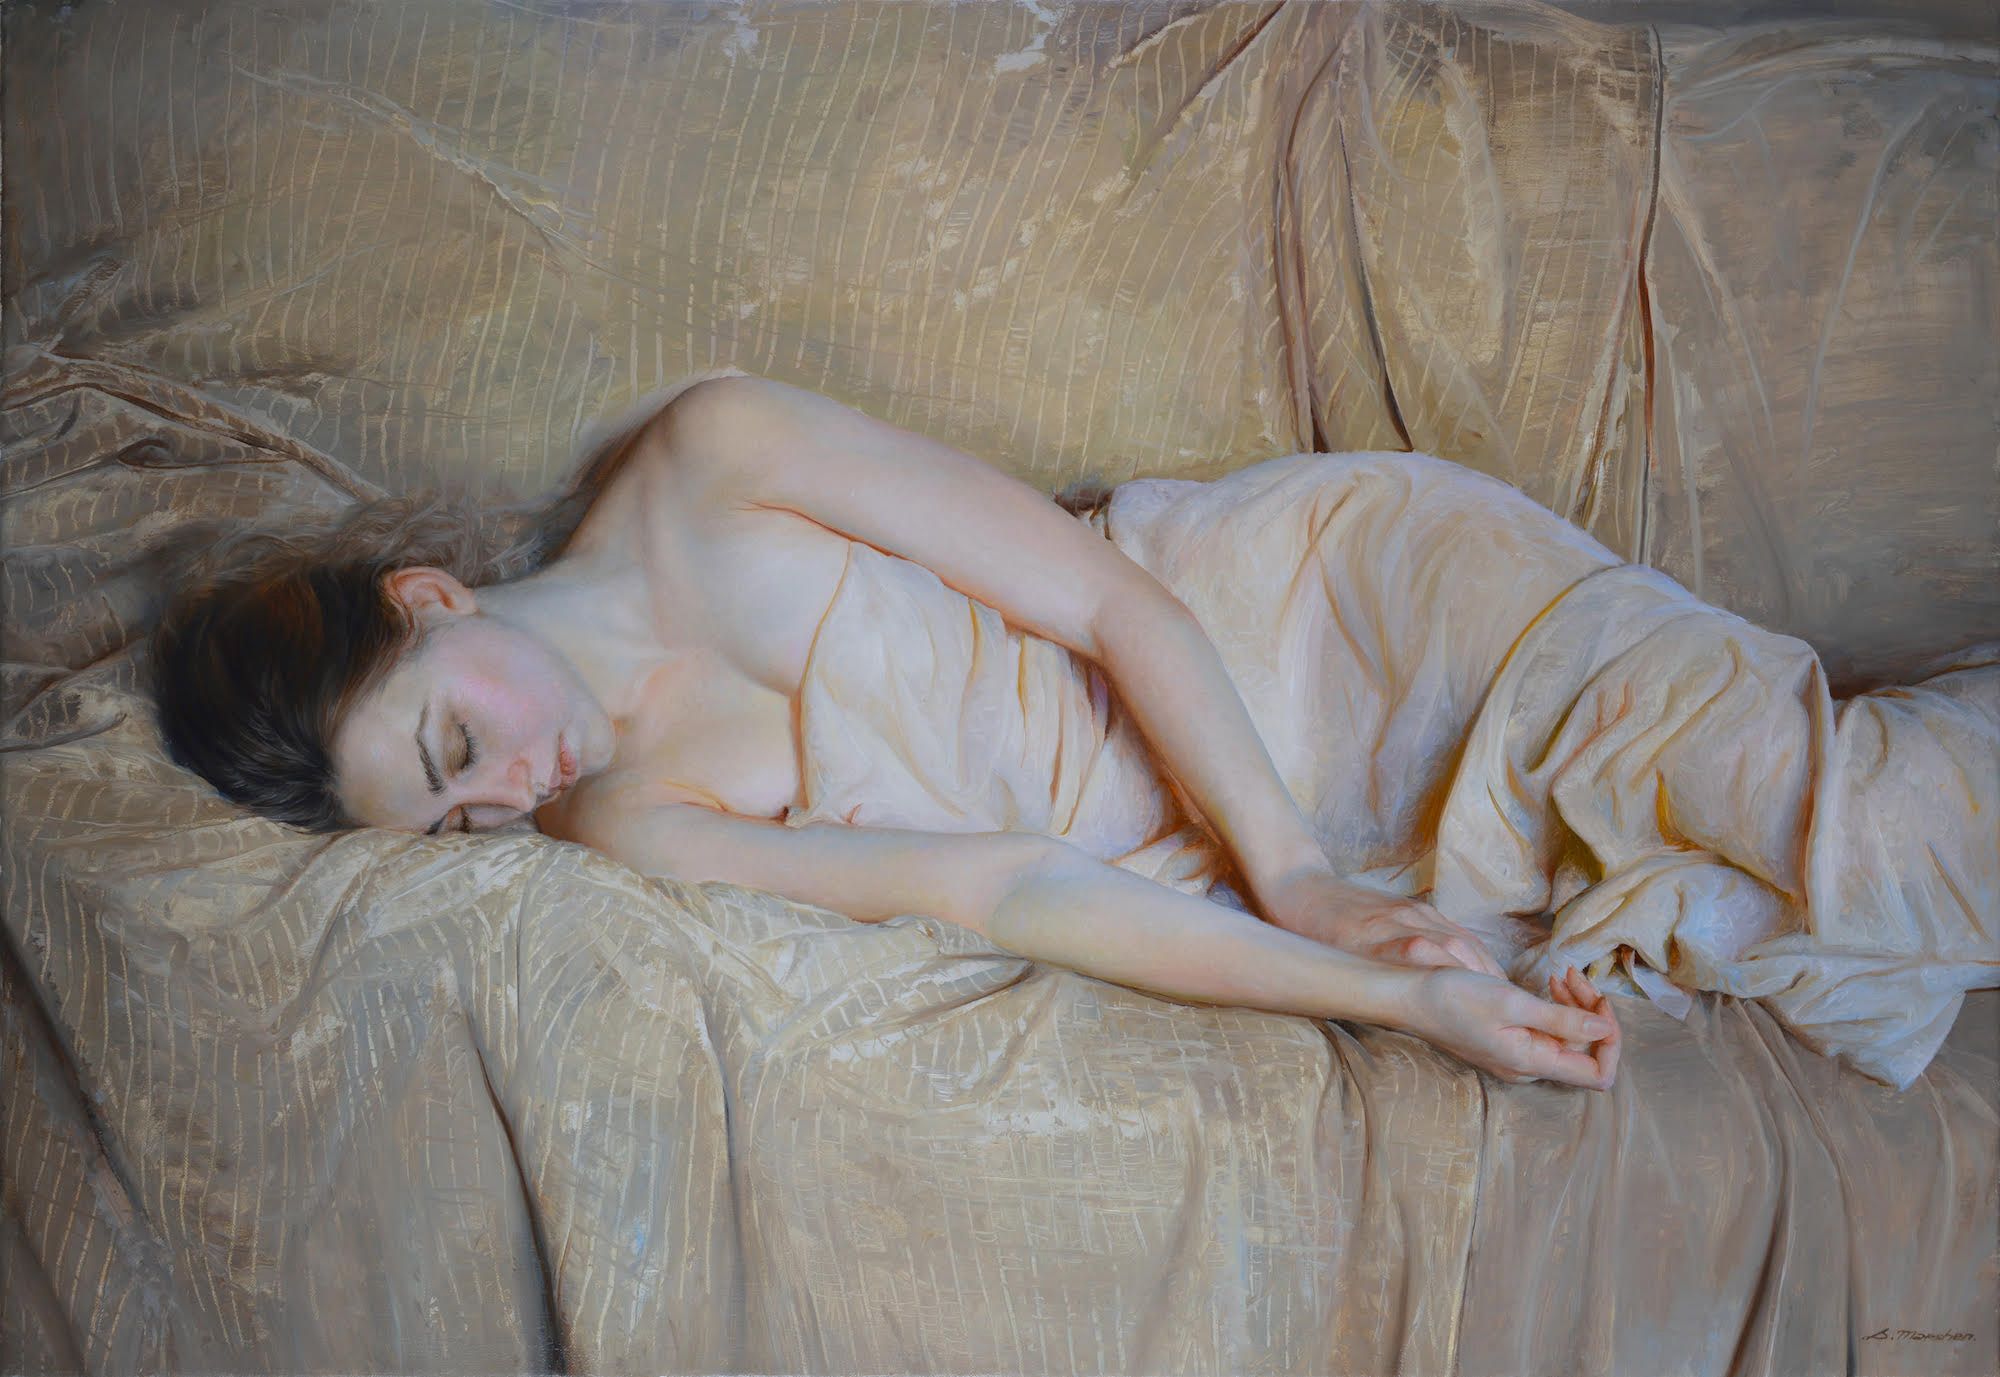 General 2000x1377 Serge Marshennikov painting women sleeping